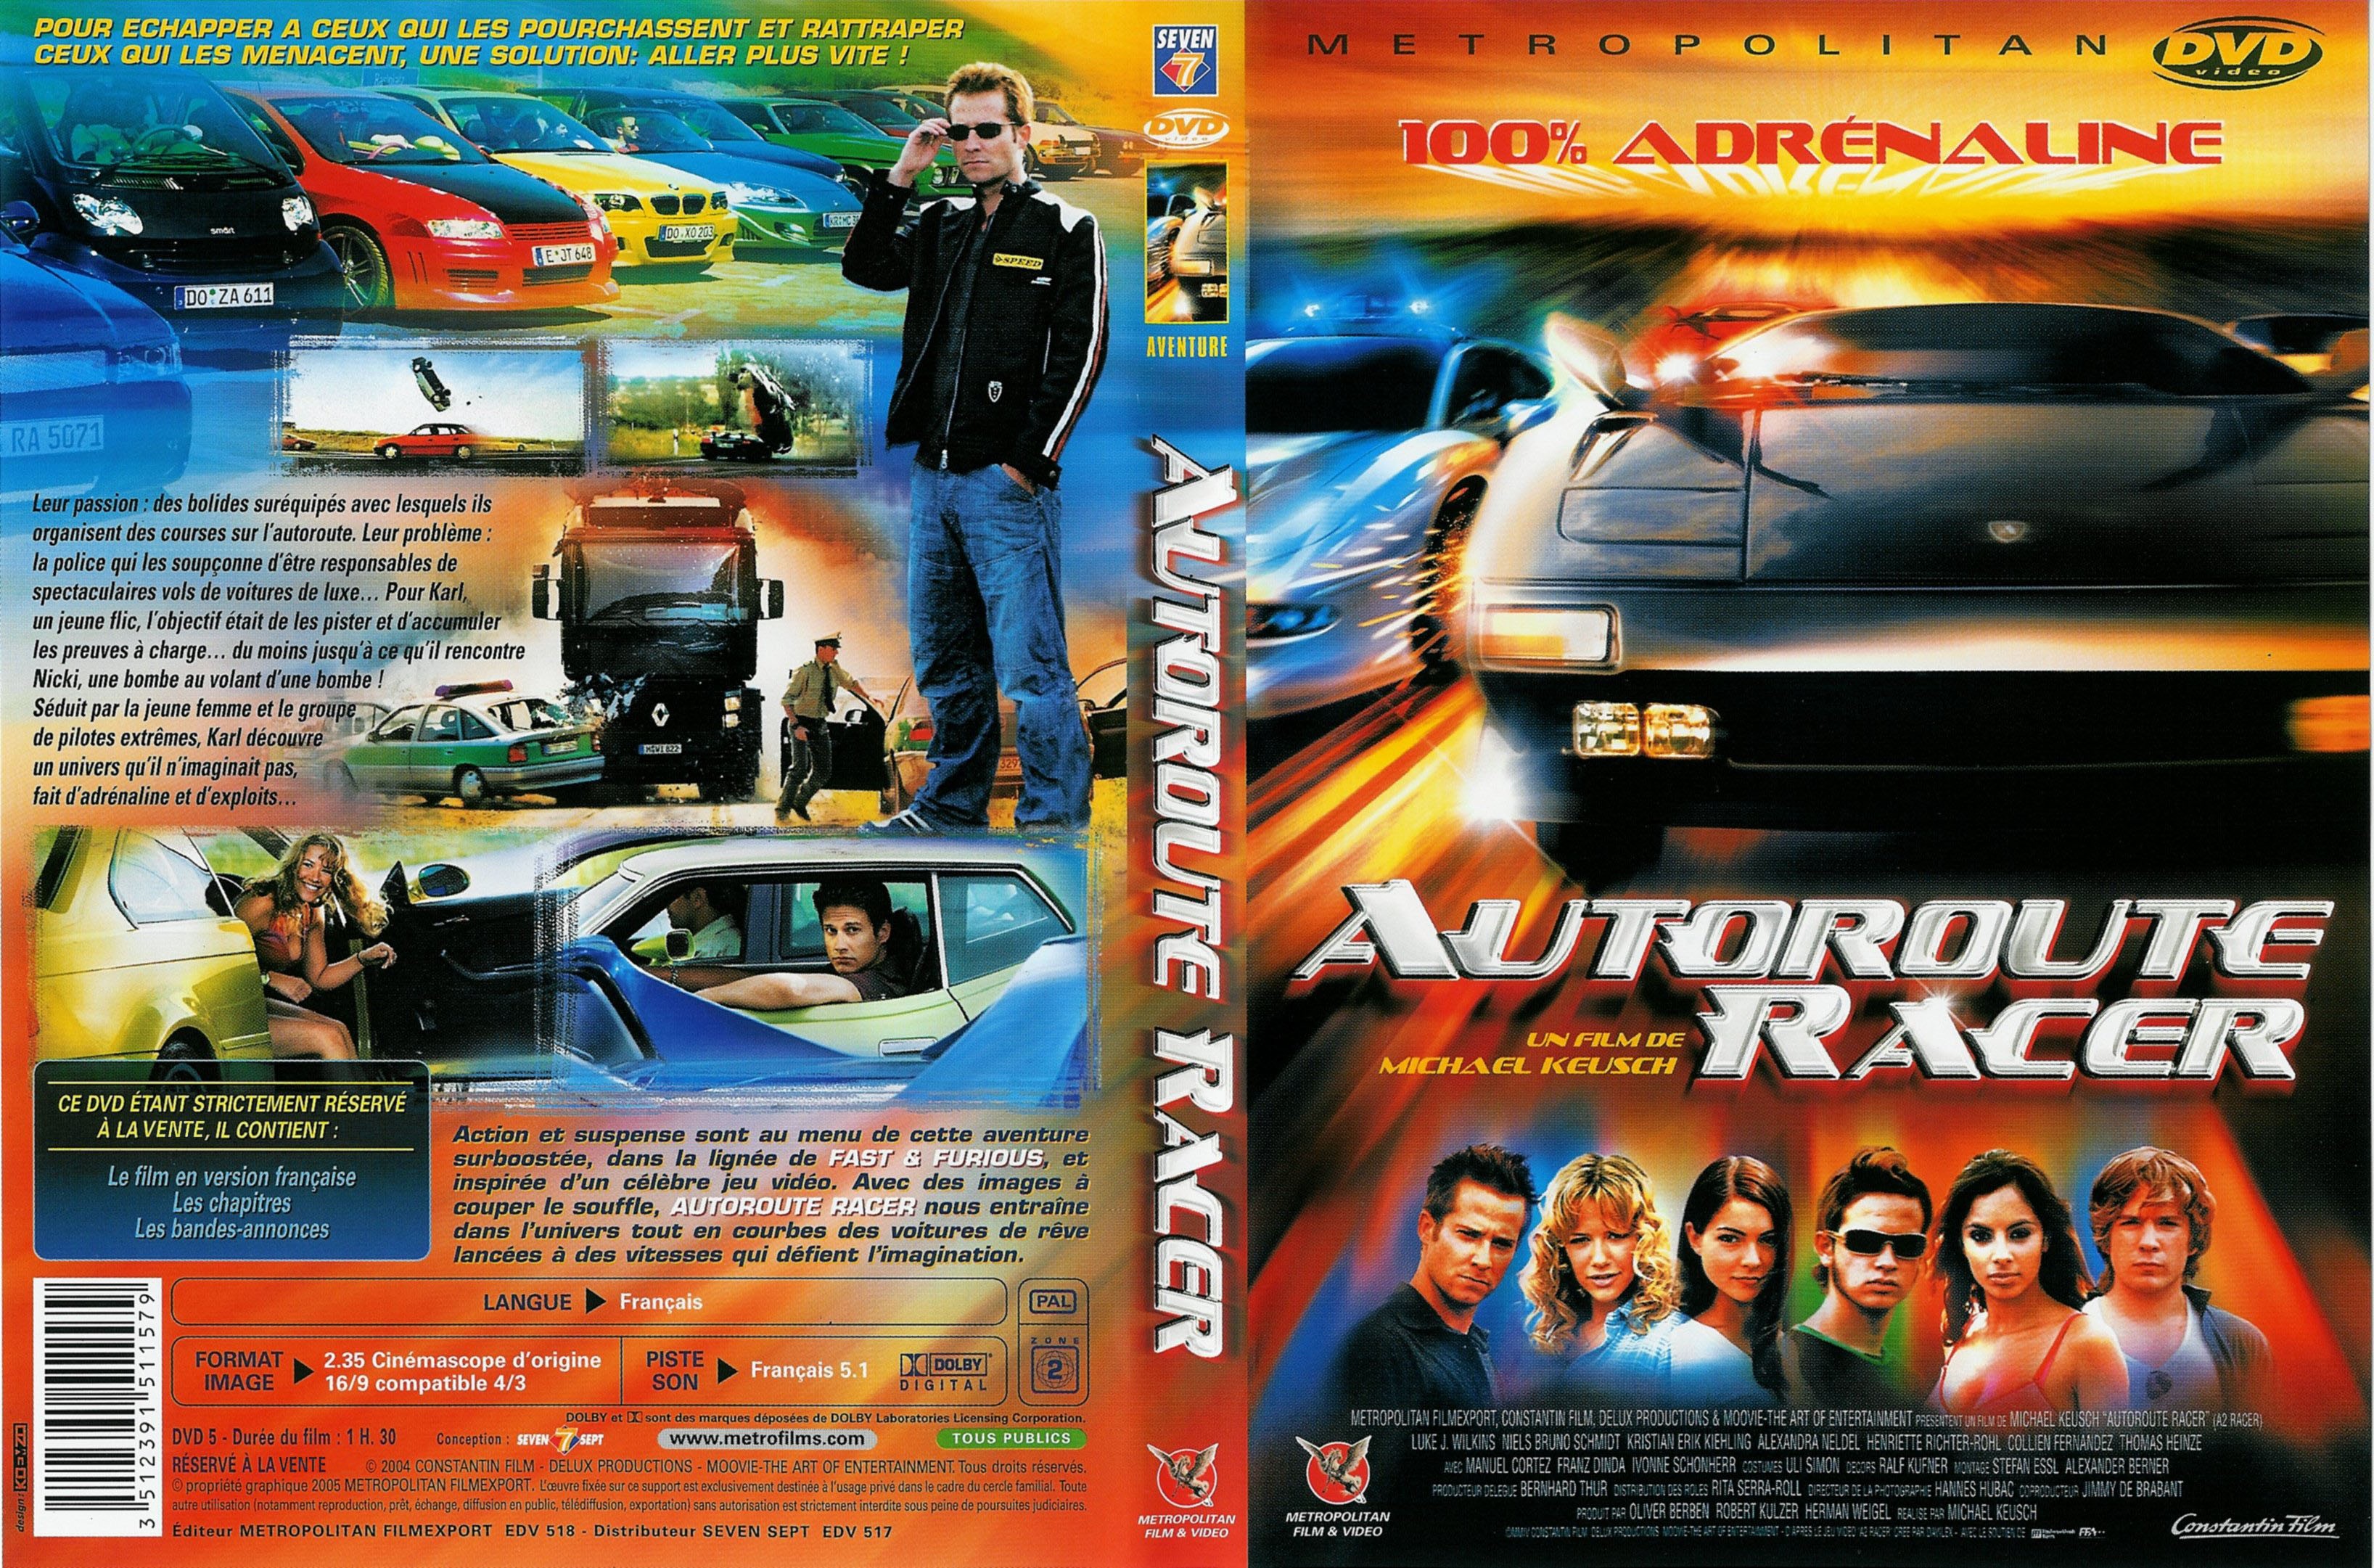 Jaquette DVD Autoroute racer